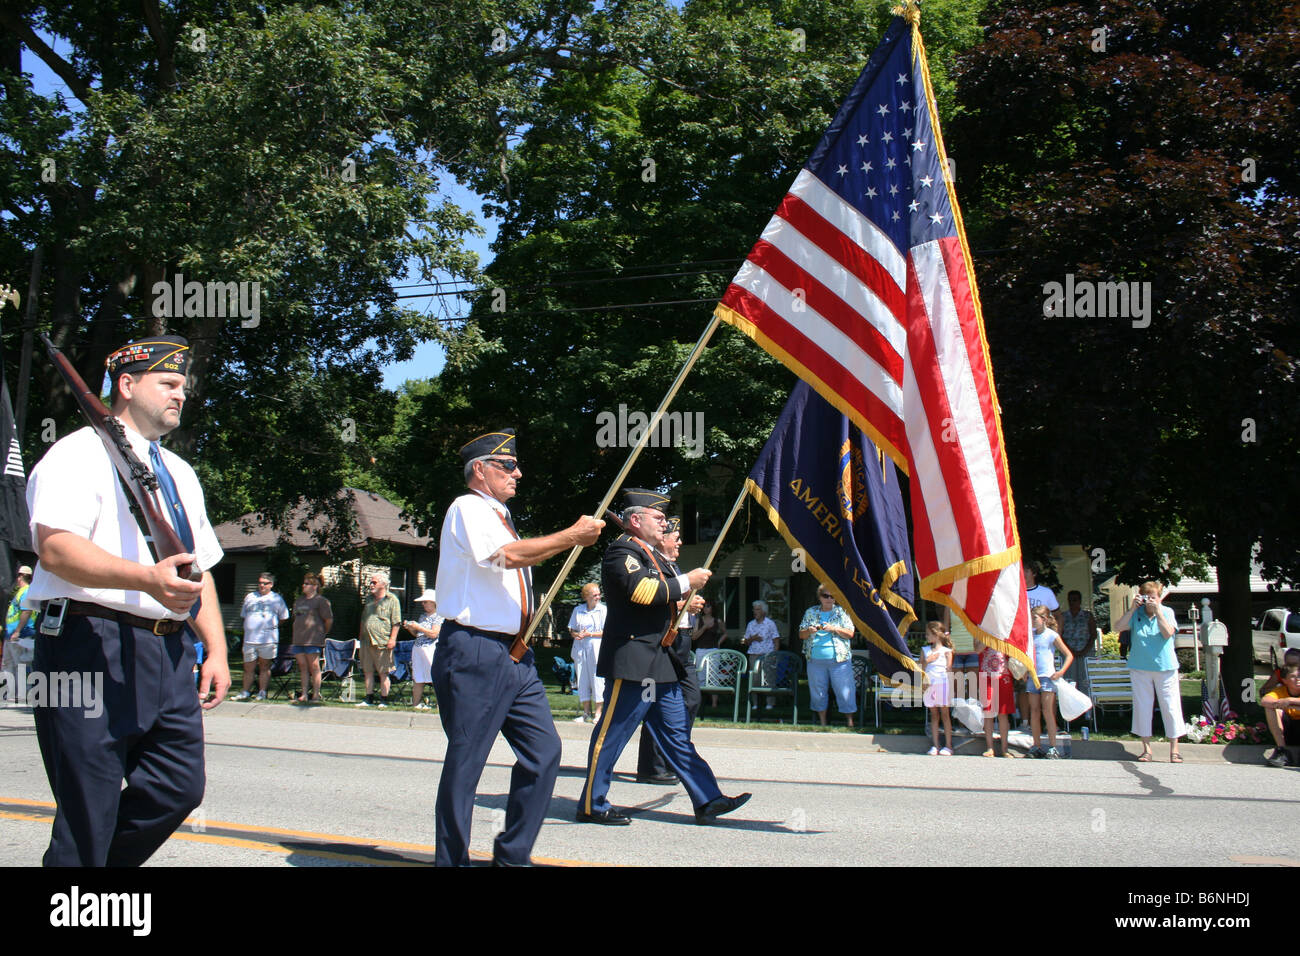 Les anciens combattants des guerres étrangères parade marching in USA Banque D'Images